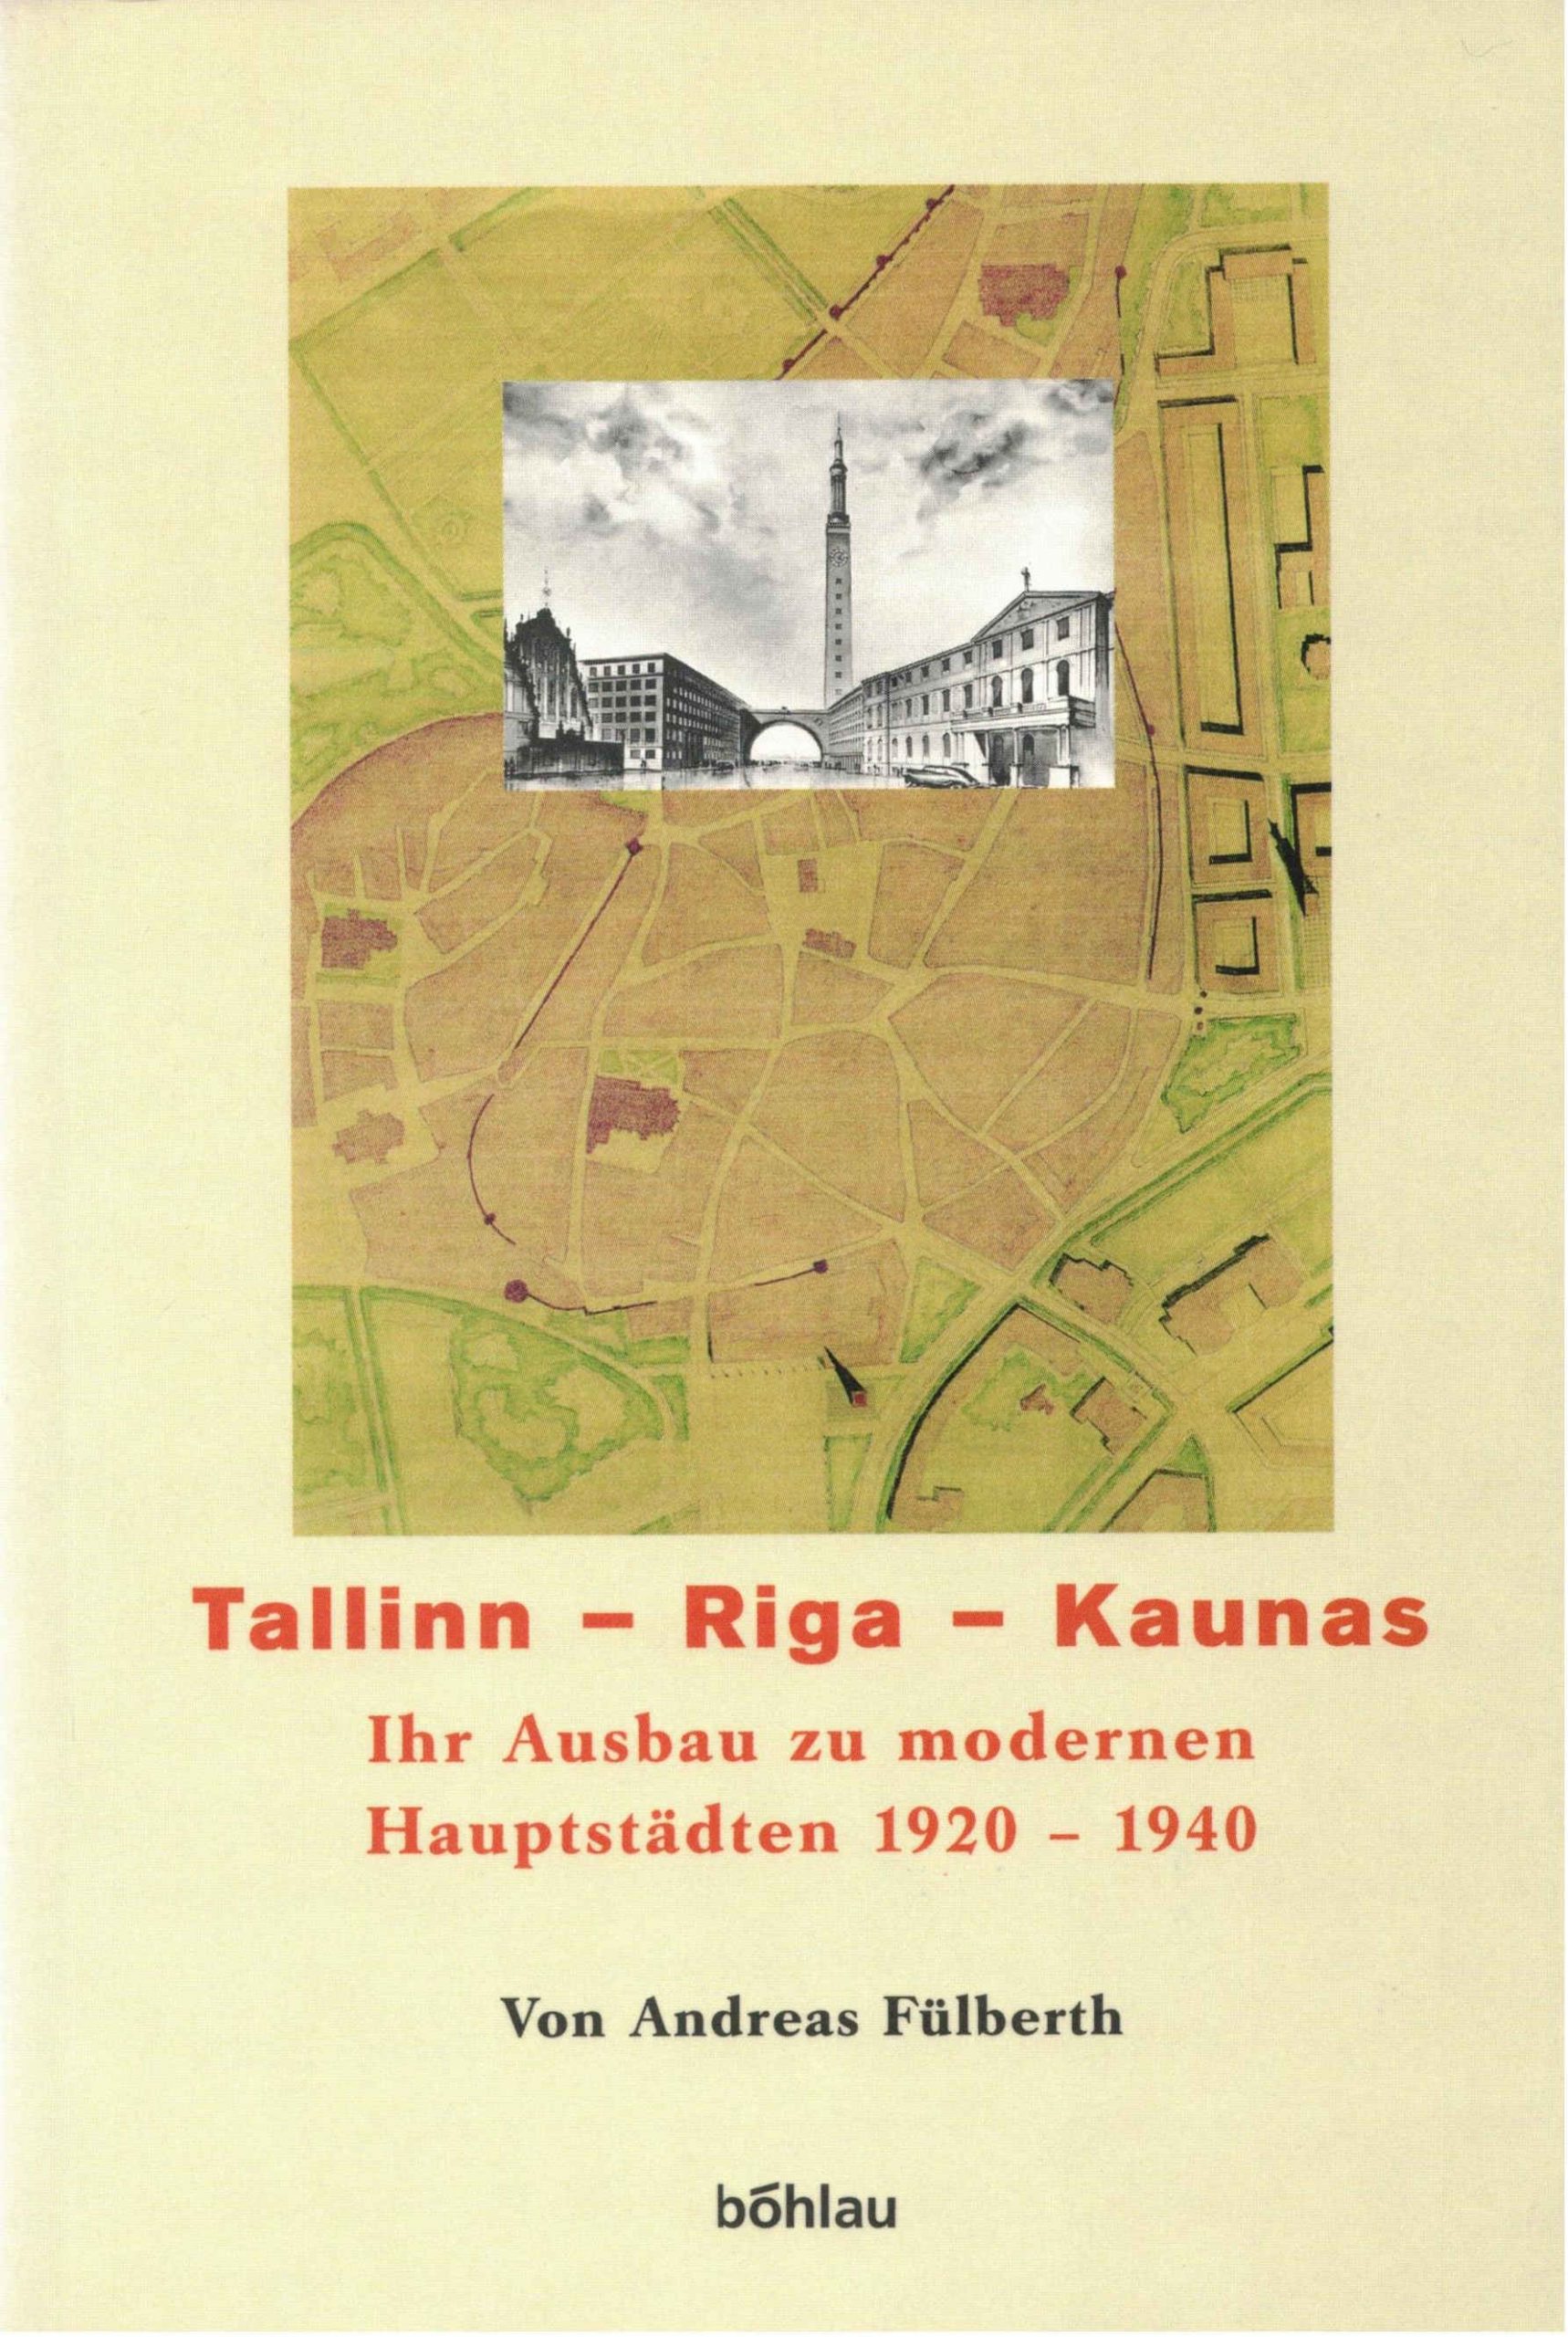 Band 02: Tallinn – Riga – Kaunas: ihr Ausbau zu modernen Hauptstädten 1920-1940